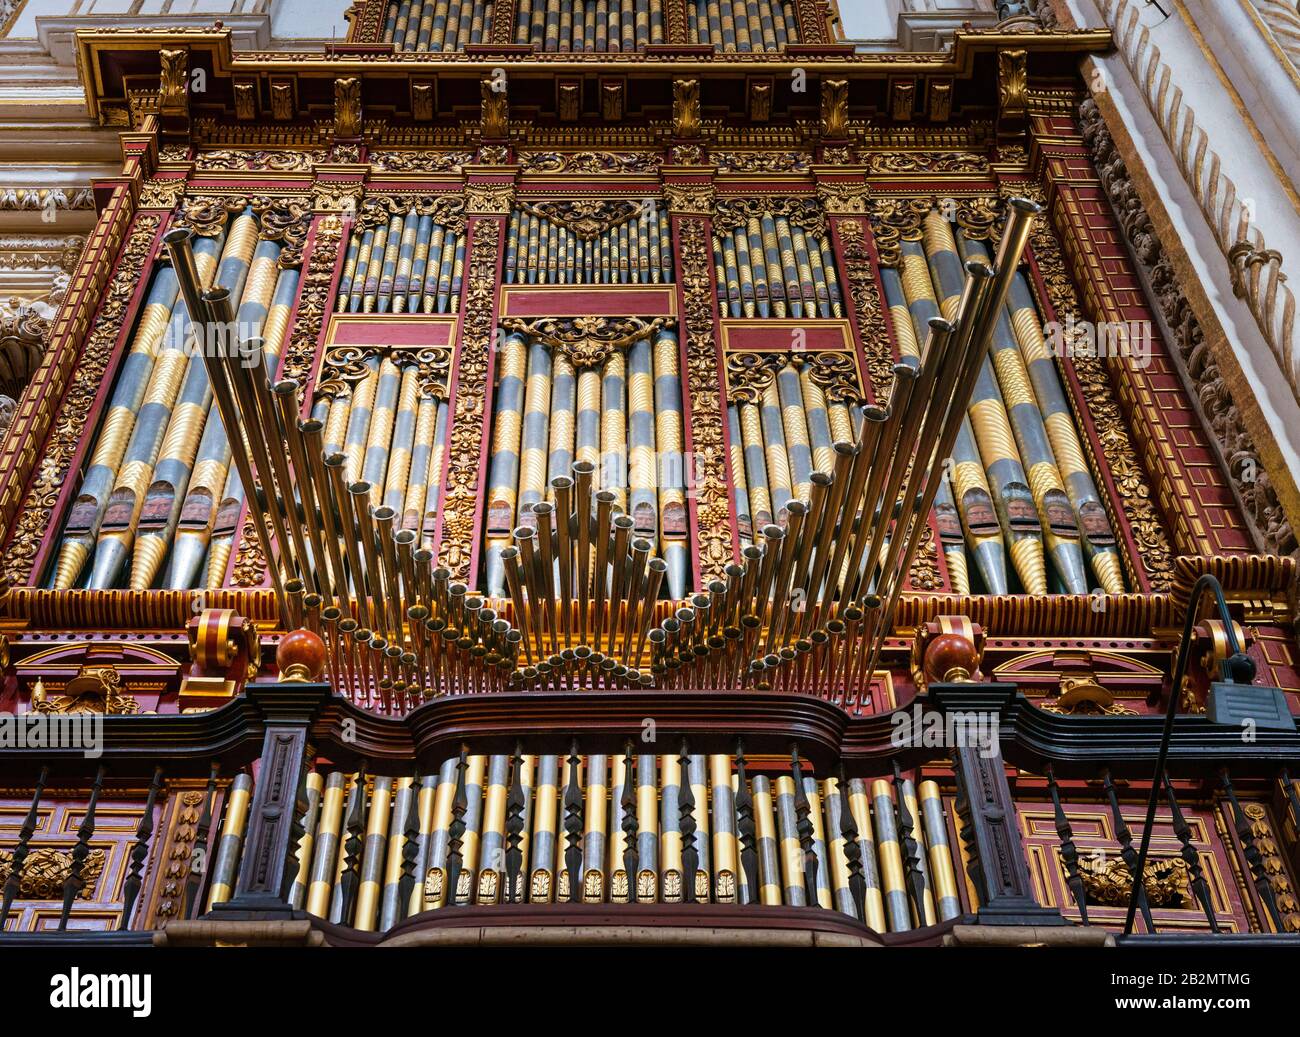 Kirchenorgel mit aufwendigen Kunstwerken an den Pfeifen in der Mezquita-Mosque-Kathedrale von Córdoba Stockfoto